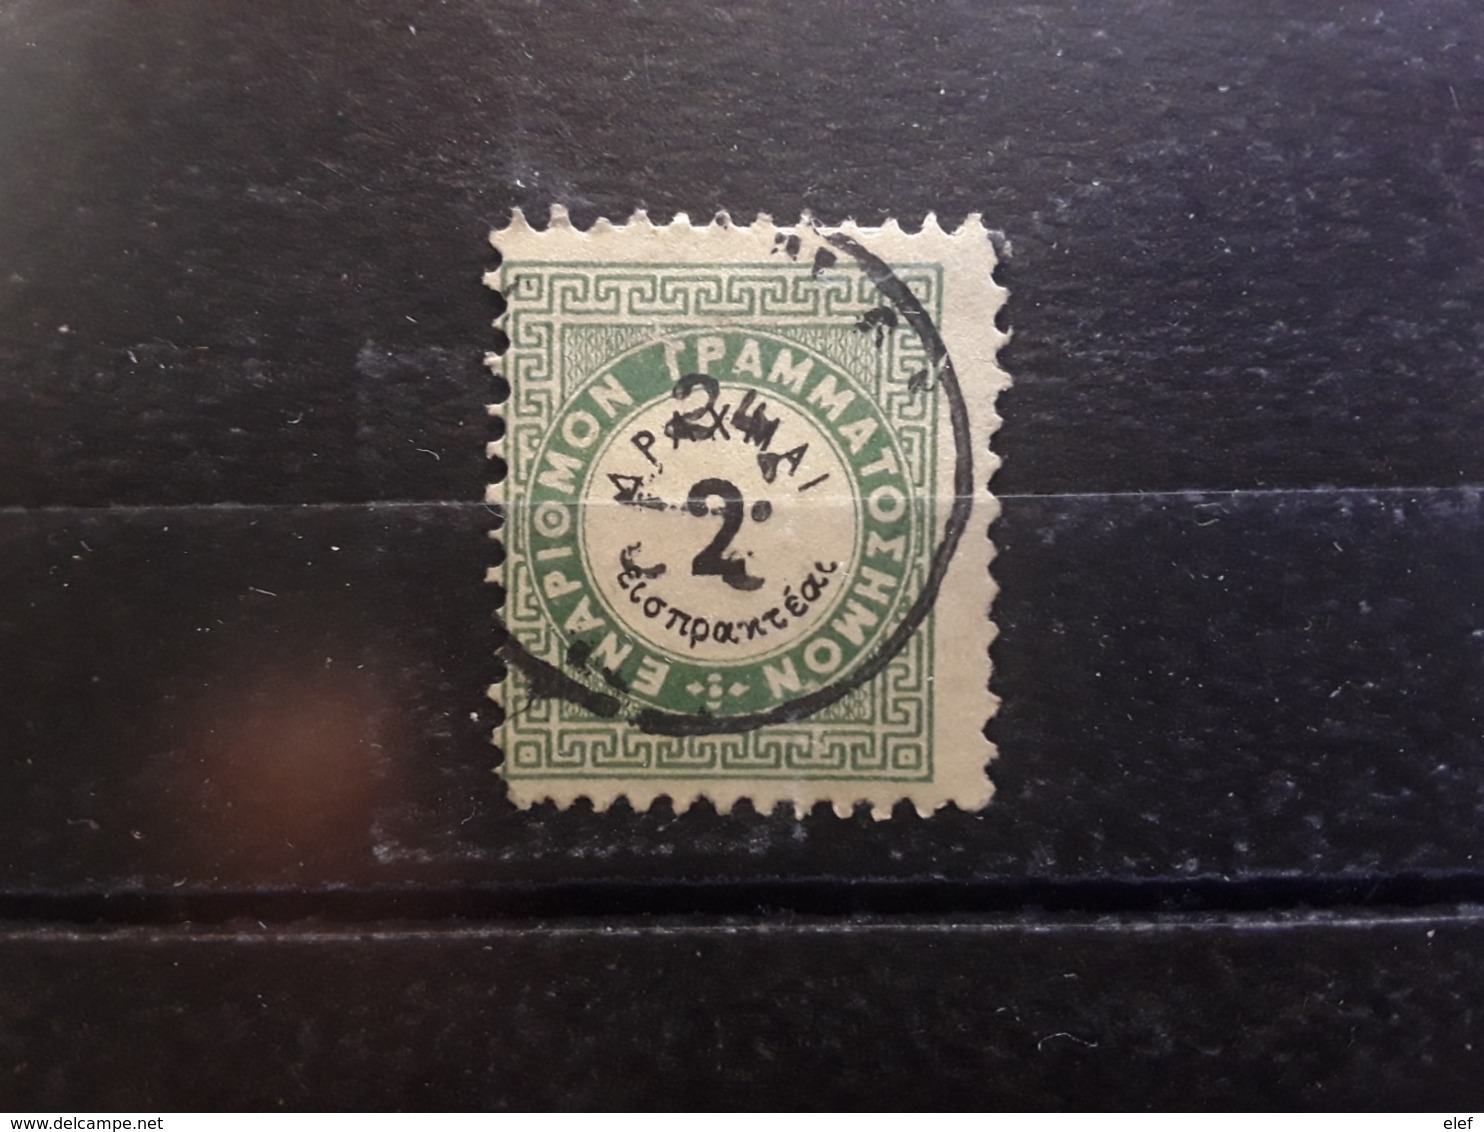 GRECE / GREECE Postage Due Taxe 1875 Yvert No 12 A, 2 D Vert Dentele 10 1/2, Obl TB - Gebraucht